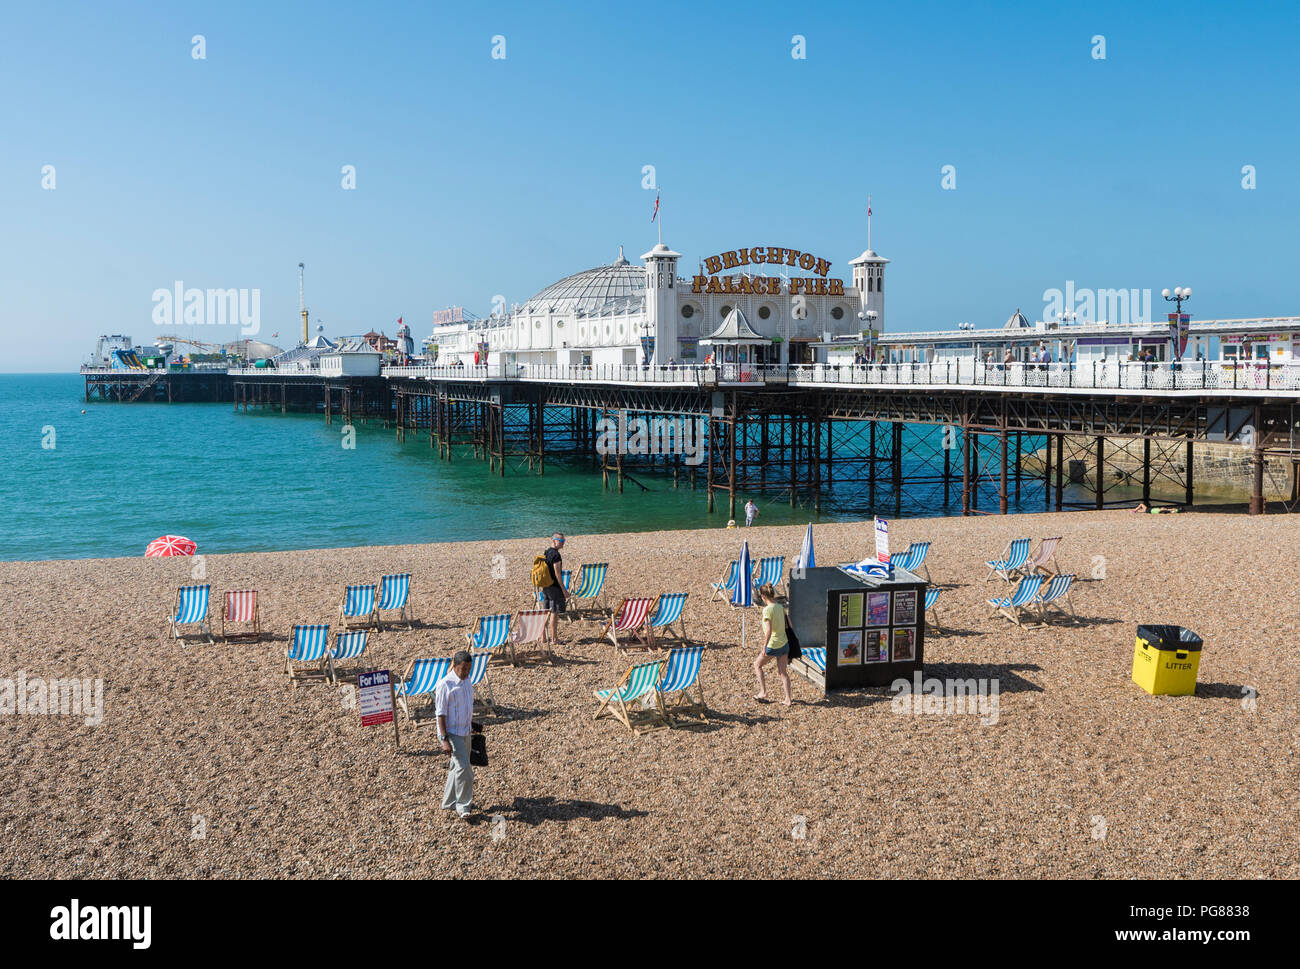 Palace Pier de Brighton, une station balnéaire britannique pier et plage de galets en été à Brighton, East Sussex, Angleterre, Royaume-Uni. Brighton Pier ciel bleu. Banque D'Images